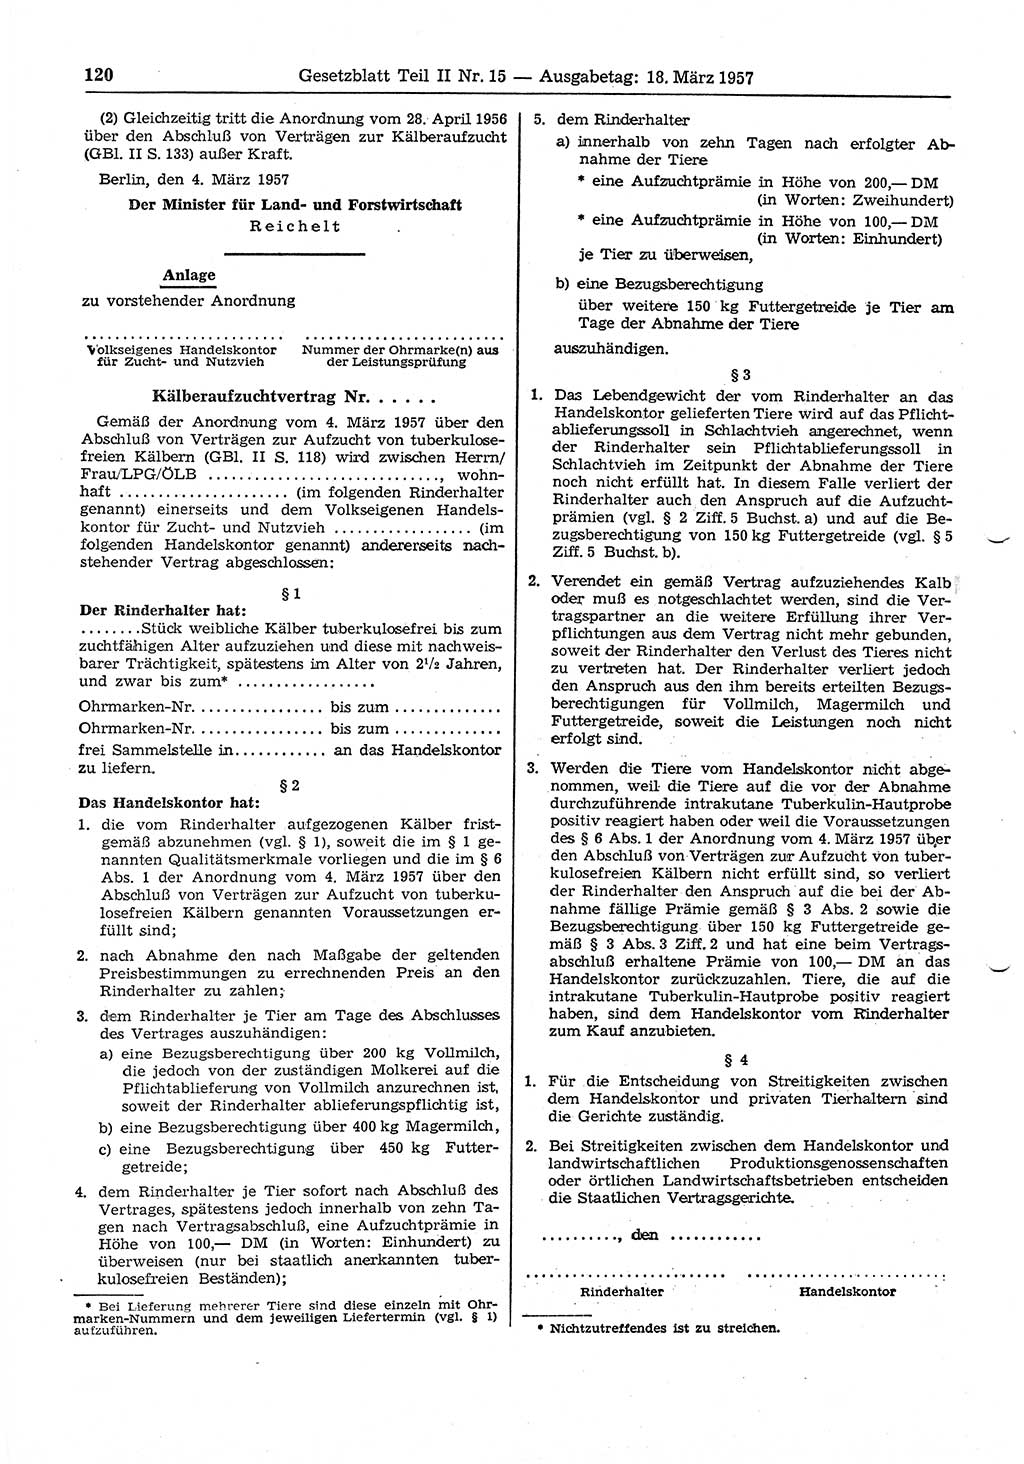 Gesetzblatt (GBl.) der Deutschen Demokratischen Republik (DDR) Teil ⅠⅠ 1957, Seite 120 (GBl. DDR ⅠⅠ 1957, S. 120)